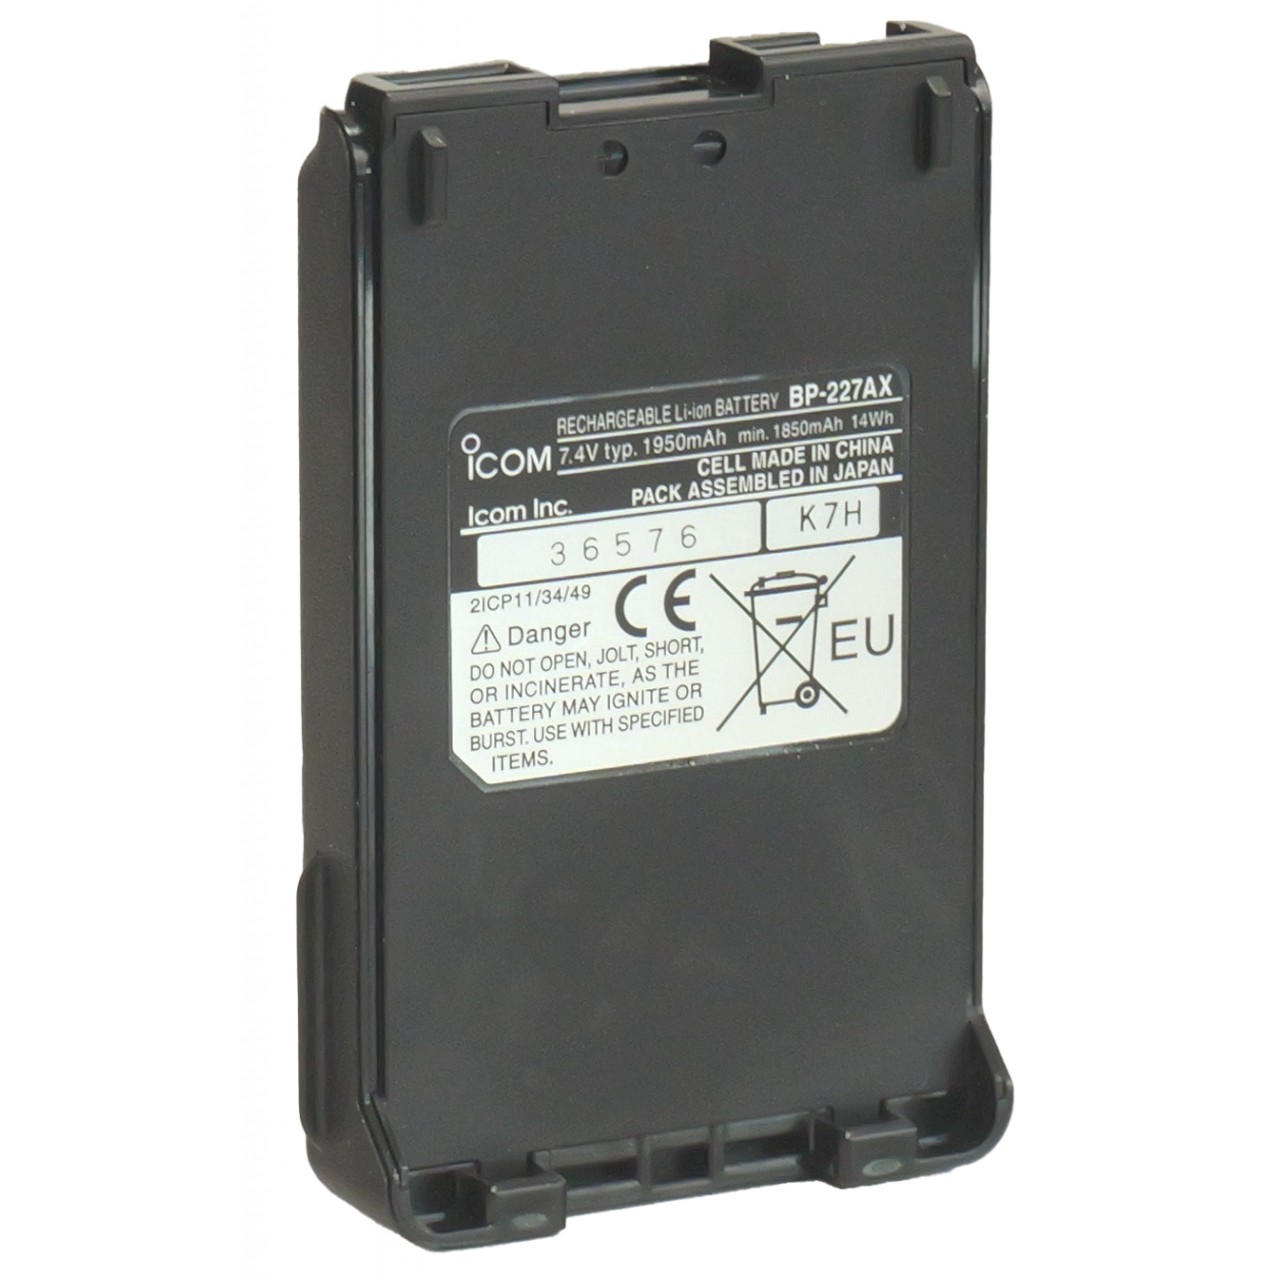 BP-227AX Batteries - ICOM